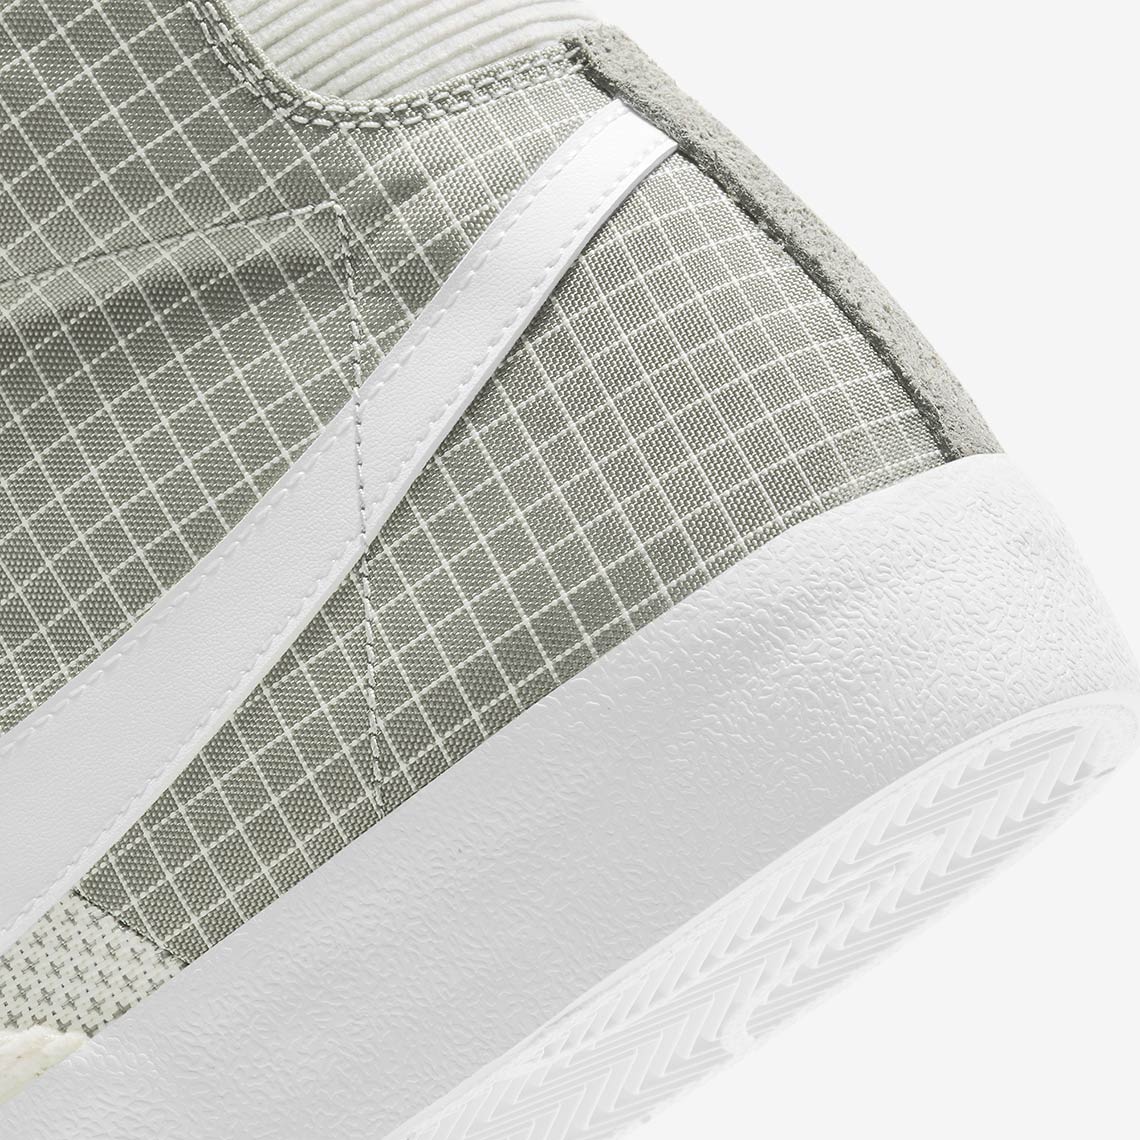 Nike Blazer Mid Dd1162 001 Release Info 7